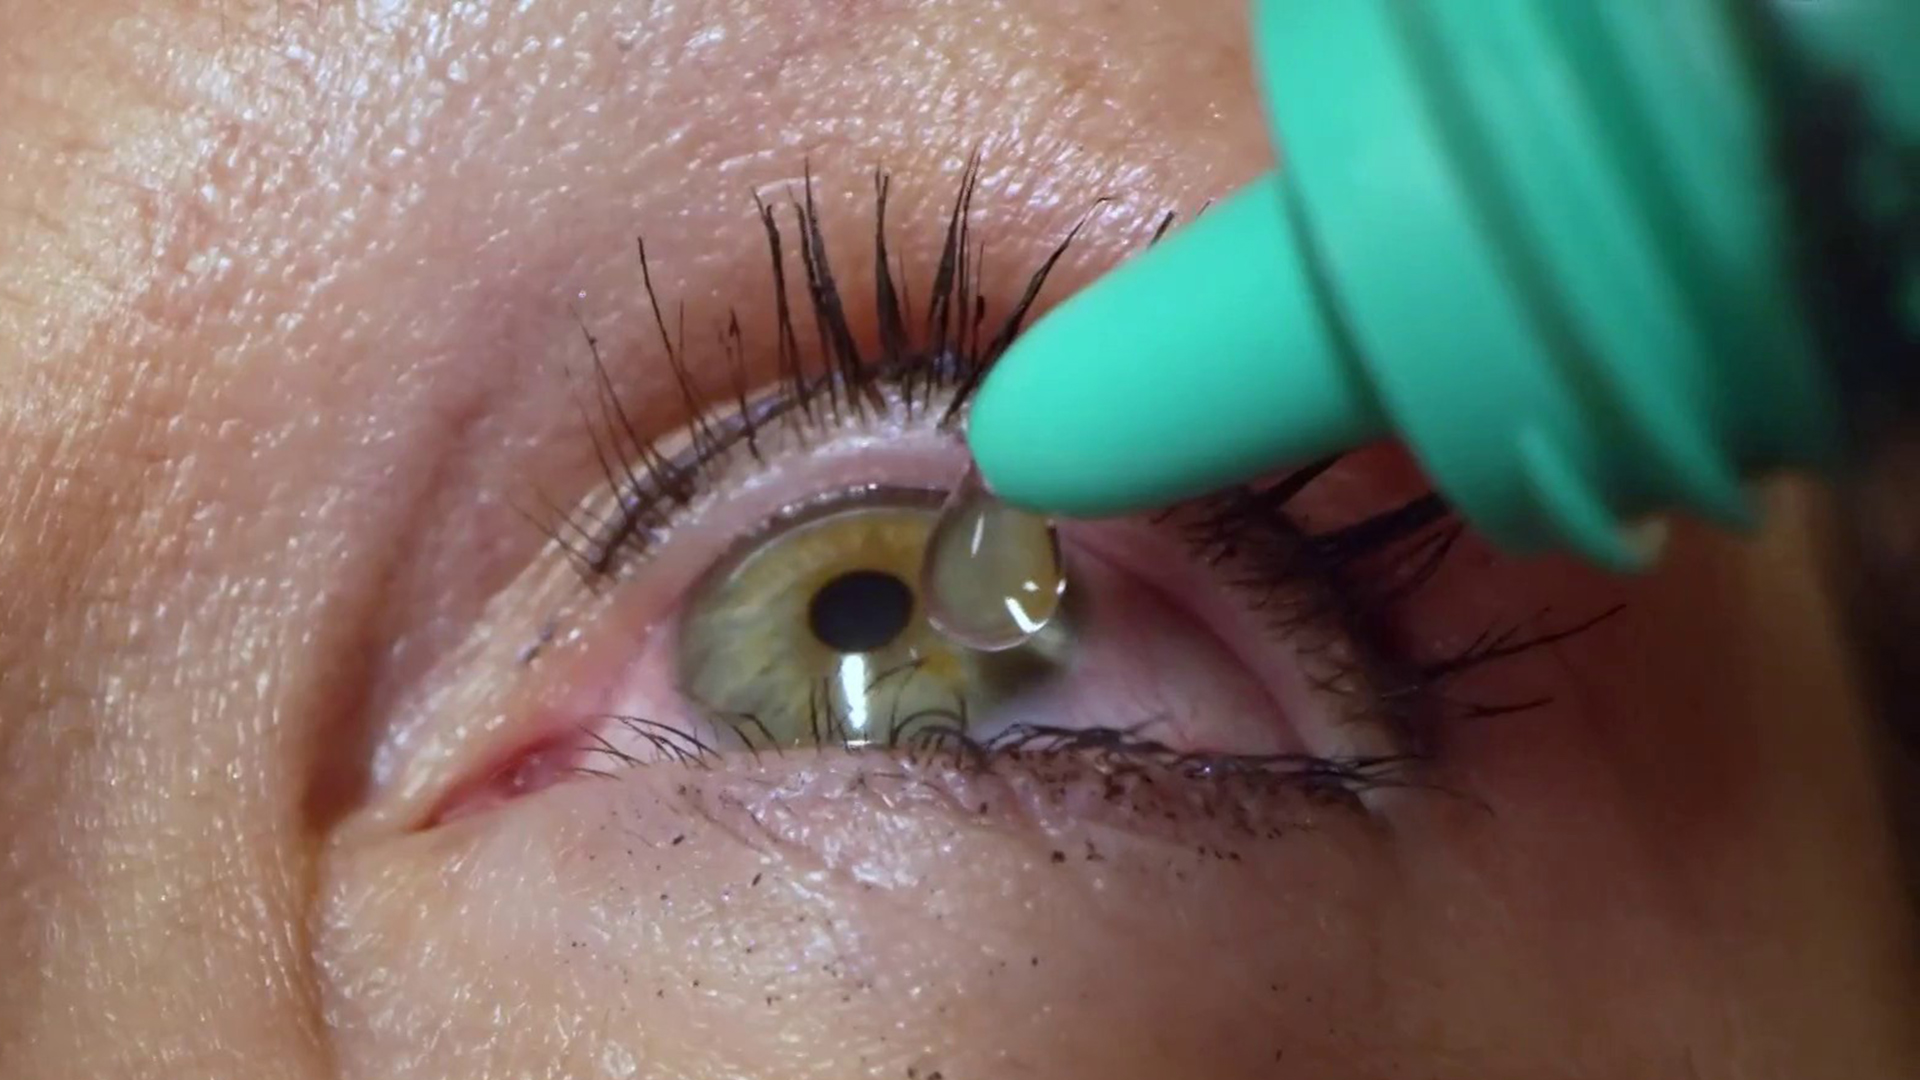 impuls Niet genoeg cowboy Woman Had 23 Contact Lenses Stuck Under Her Eyelid, Doctor Says